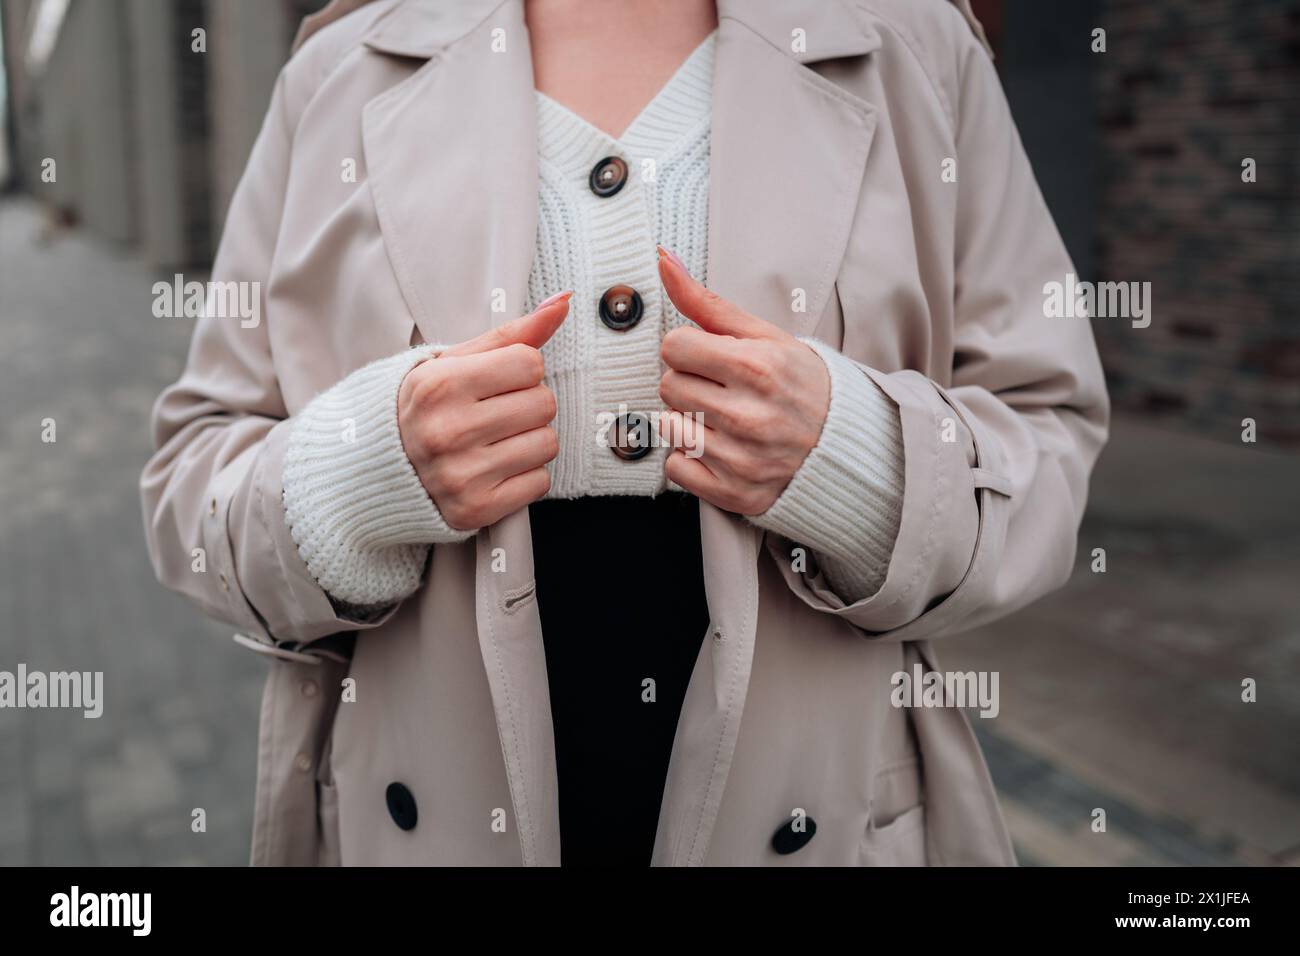 Détails de fantaisie Street style d'un pull boutonné blanc tricoté et trench beige pour femme. Mode urbaine contemporaine Banque D'Images